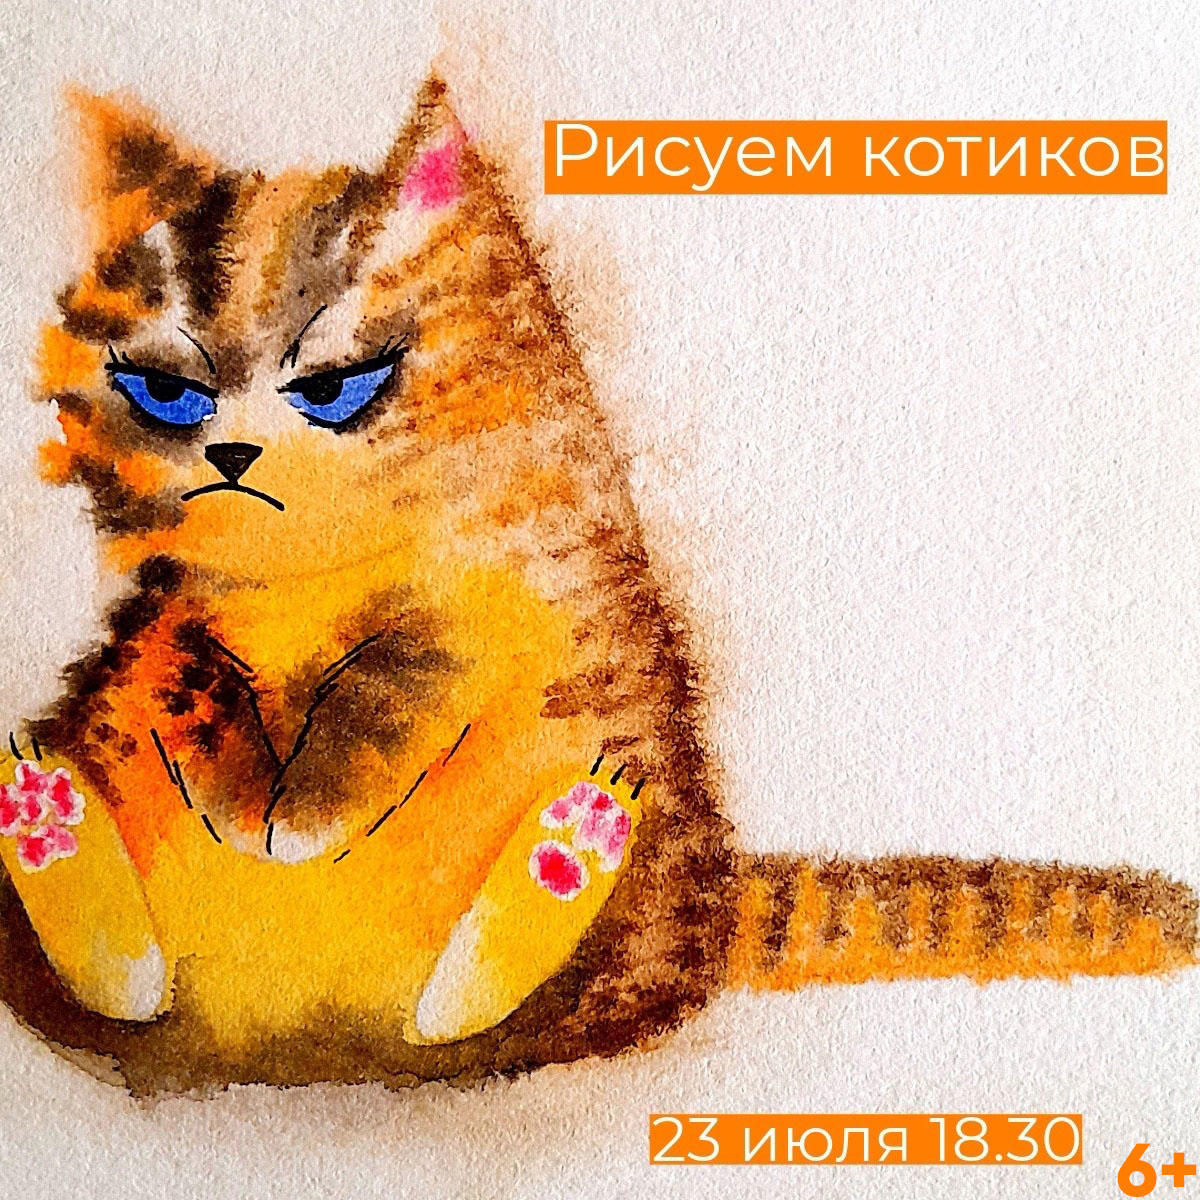 Тверское котокафе приглашает нарисовать котиков